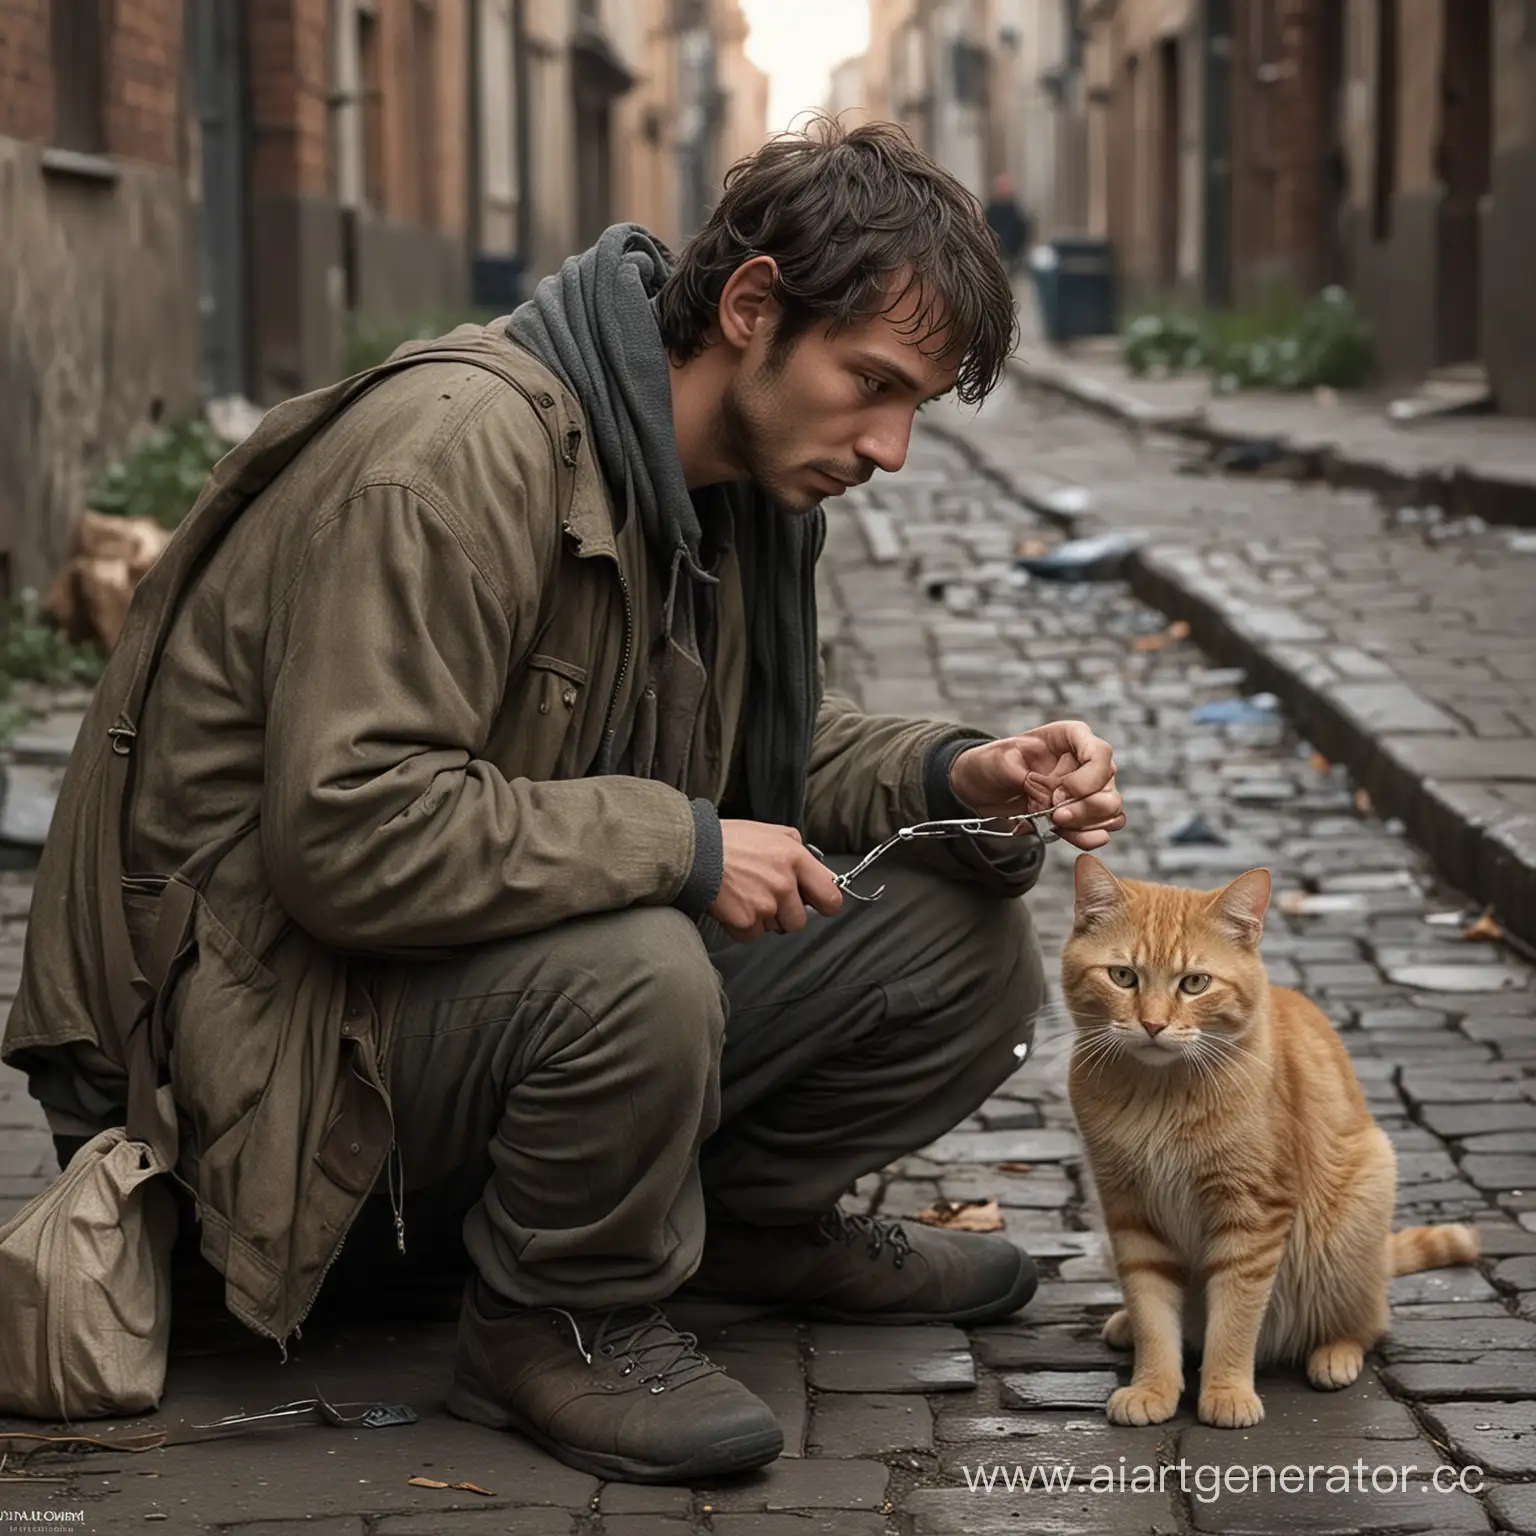 Главный герой, Павел, случайно встречает на улице бездомного кота по имени Мурзик.
Павел решает помочь коту и начинает заботиться о нём, кормит и ухаживает за ним.
Мурзик становится верным другом Павла и помогает ему справиться с одиночеством.